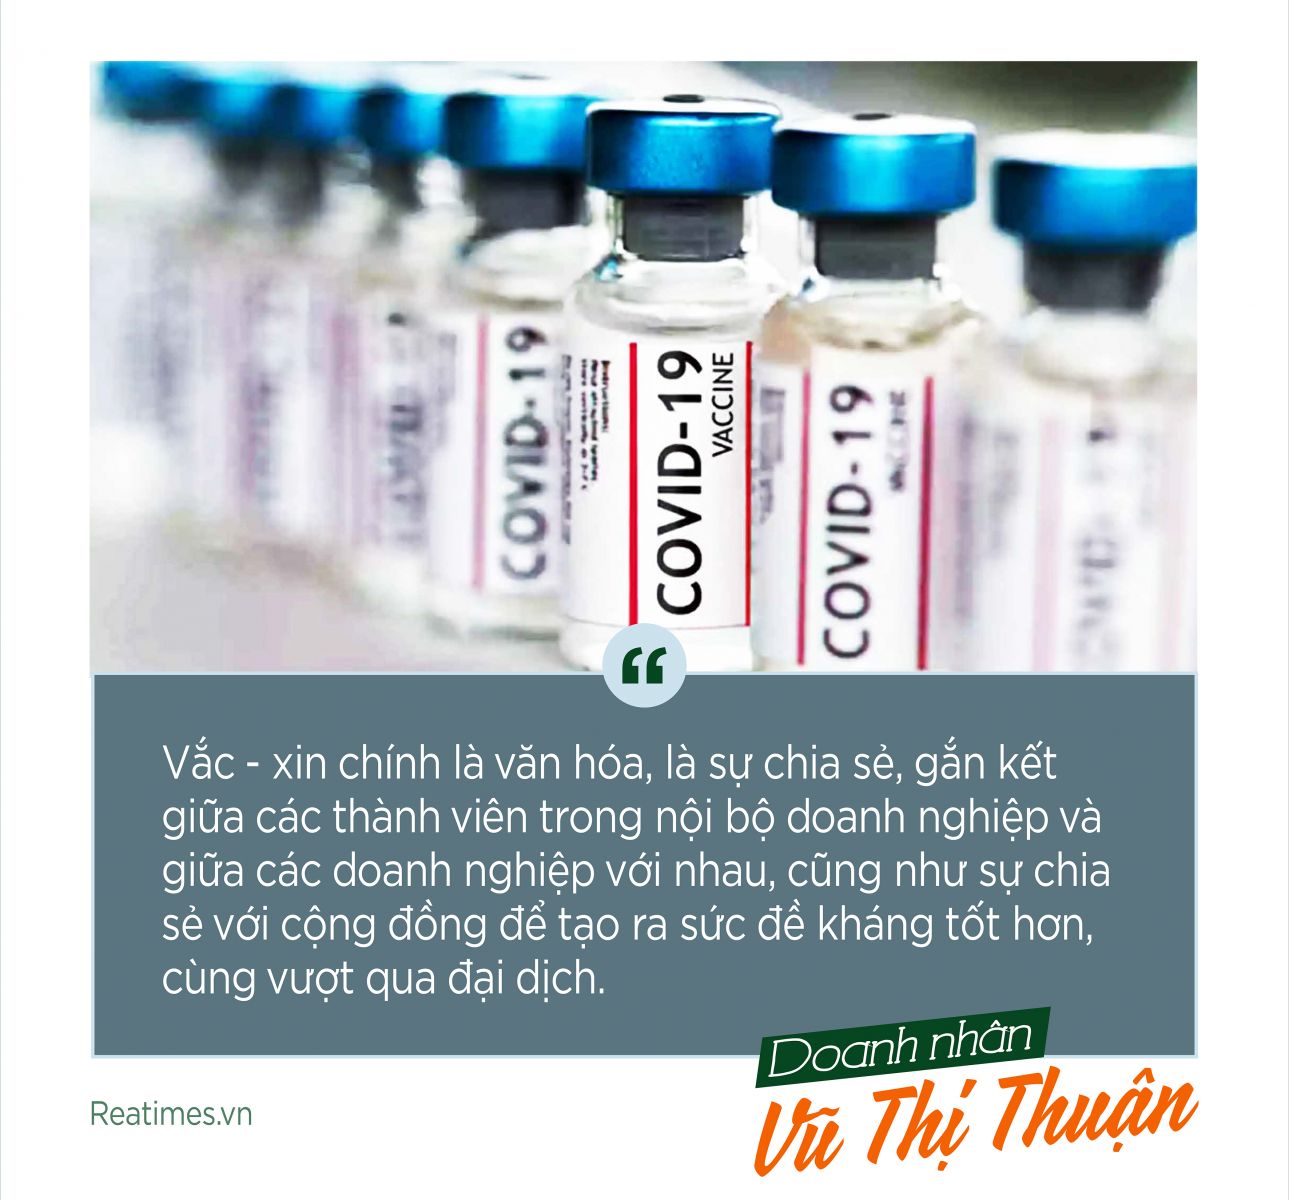 Doanh nhân Vũ Thị Thuận